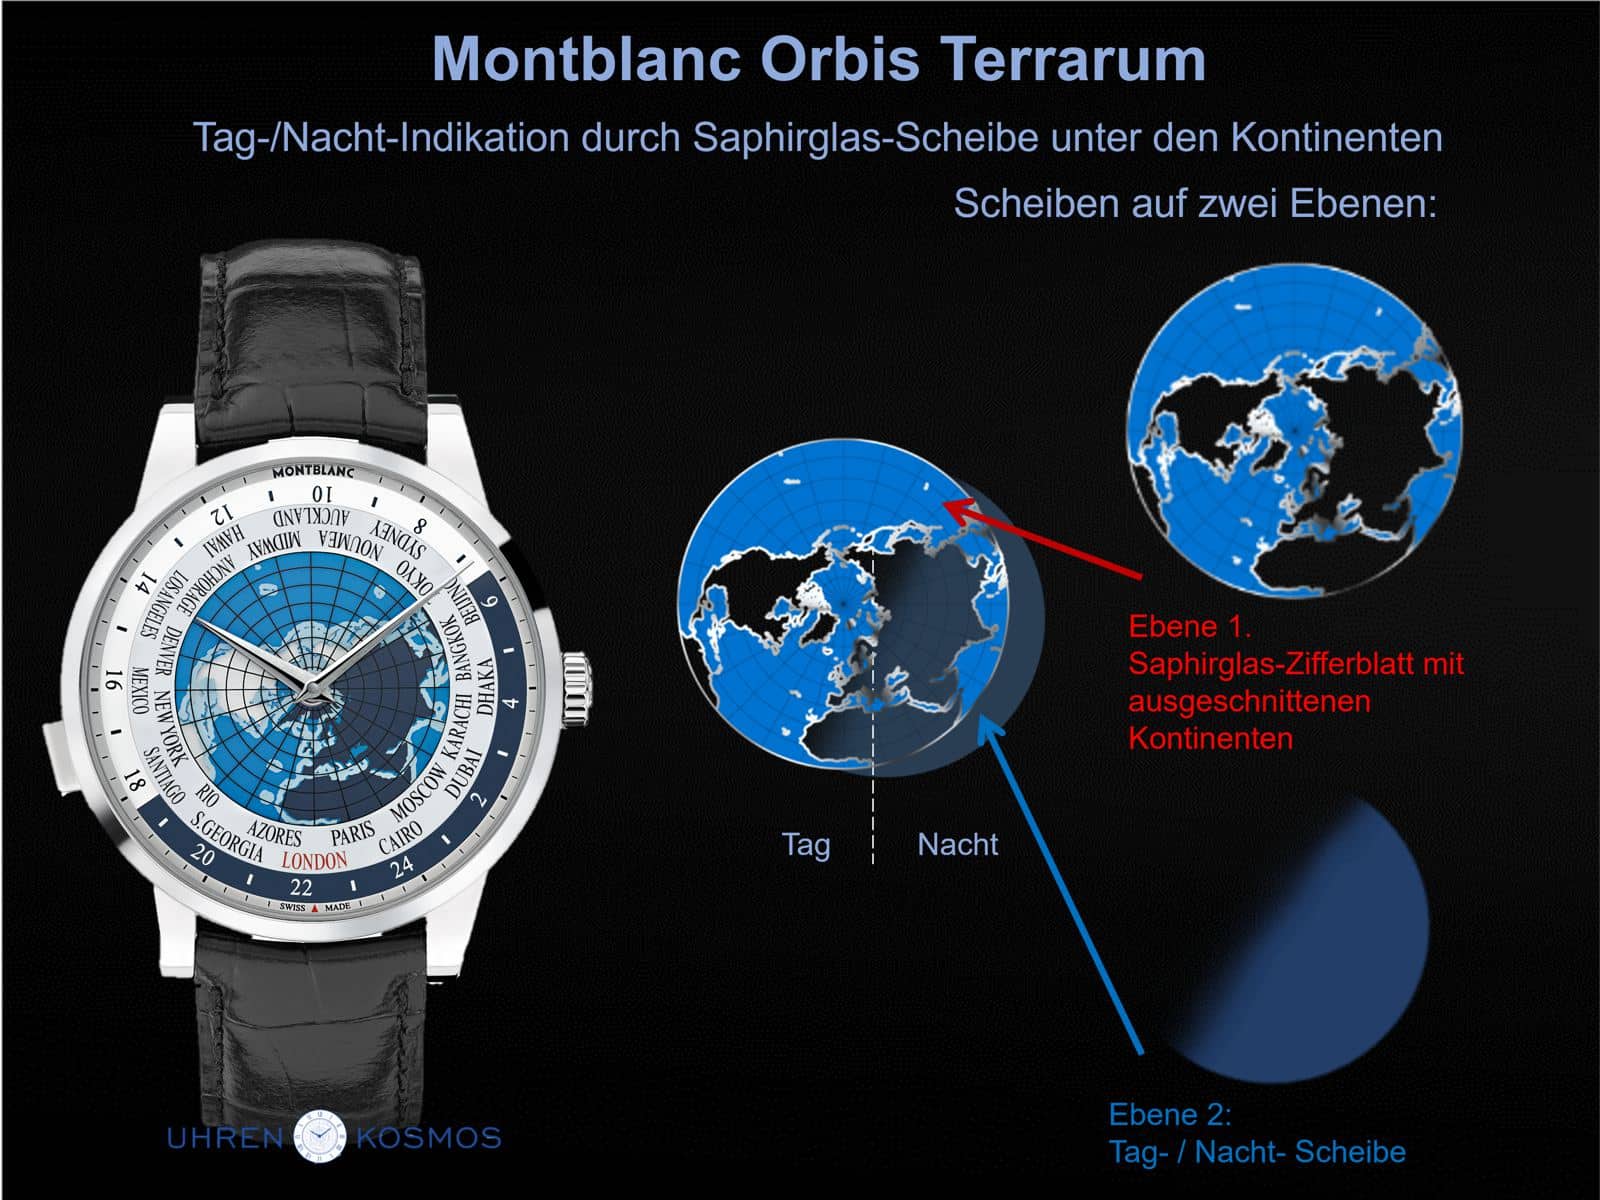 Montblanc Orbis Terrarum Weltzeituhr: Scheiben prägen das Gesicht